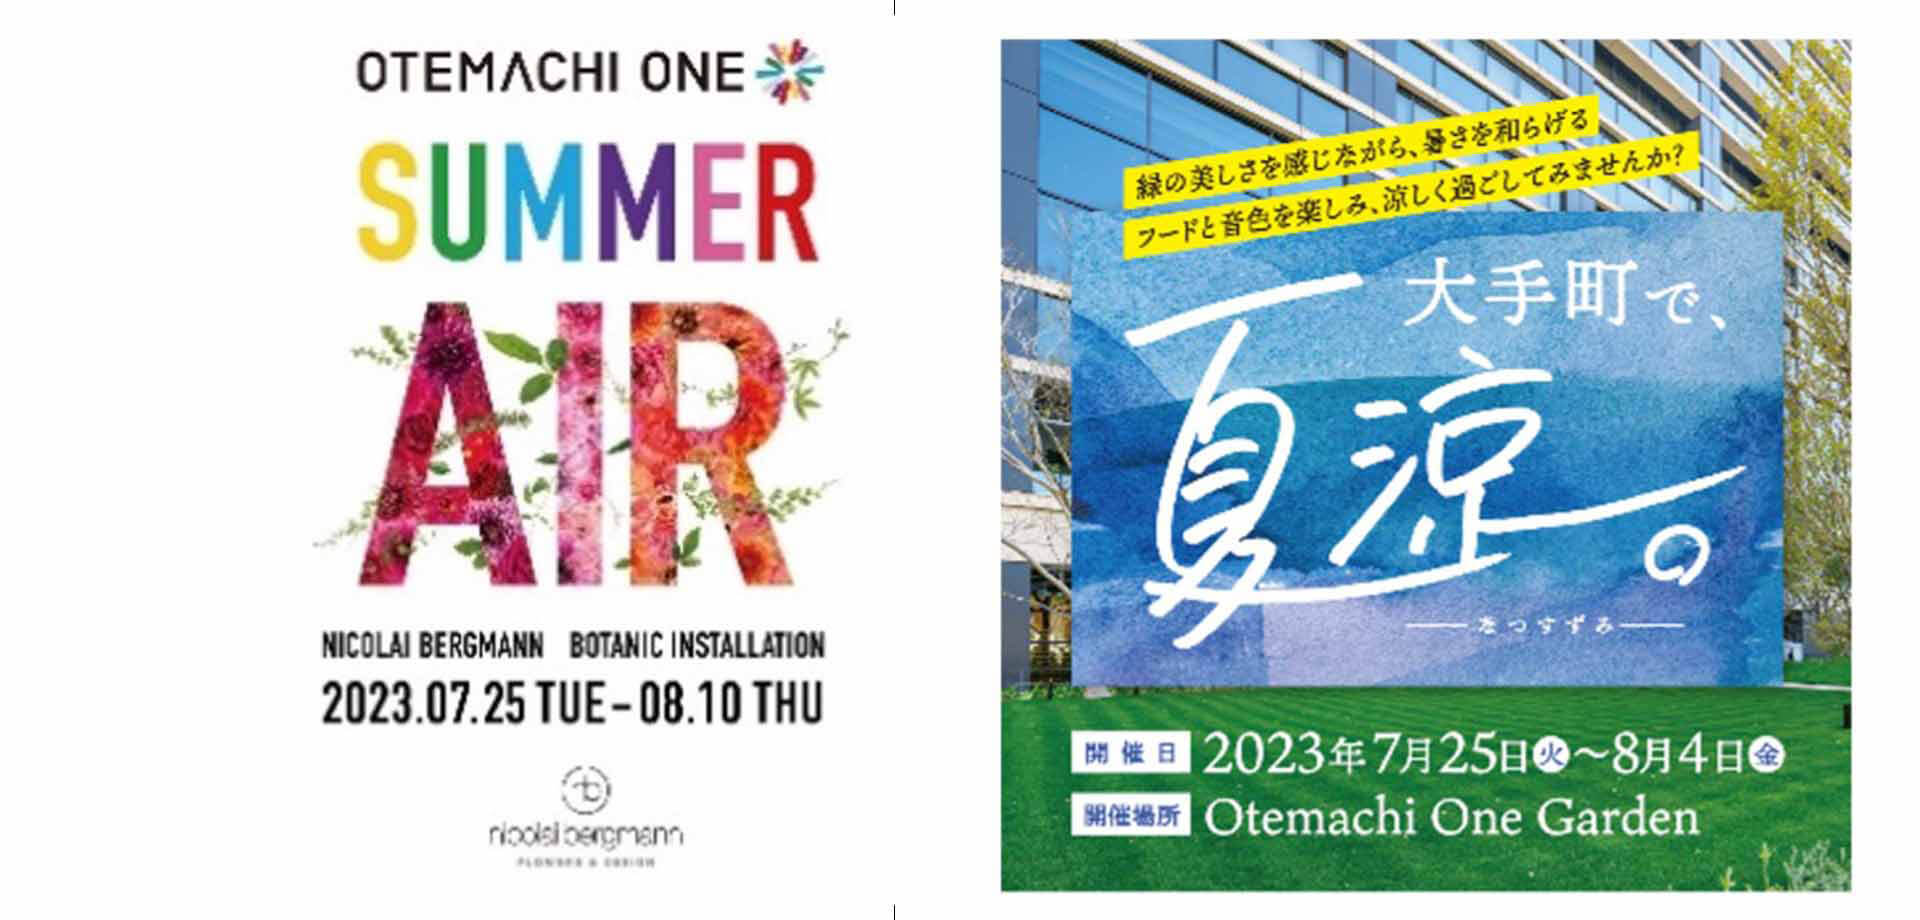 Otemachi One 「SUMMER AIR」 「大手町で、夏涼。-なつすずみ-」